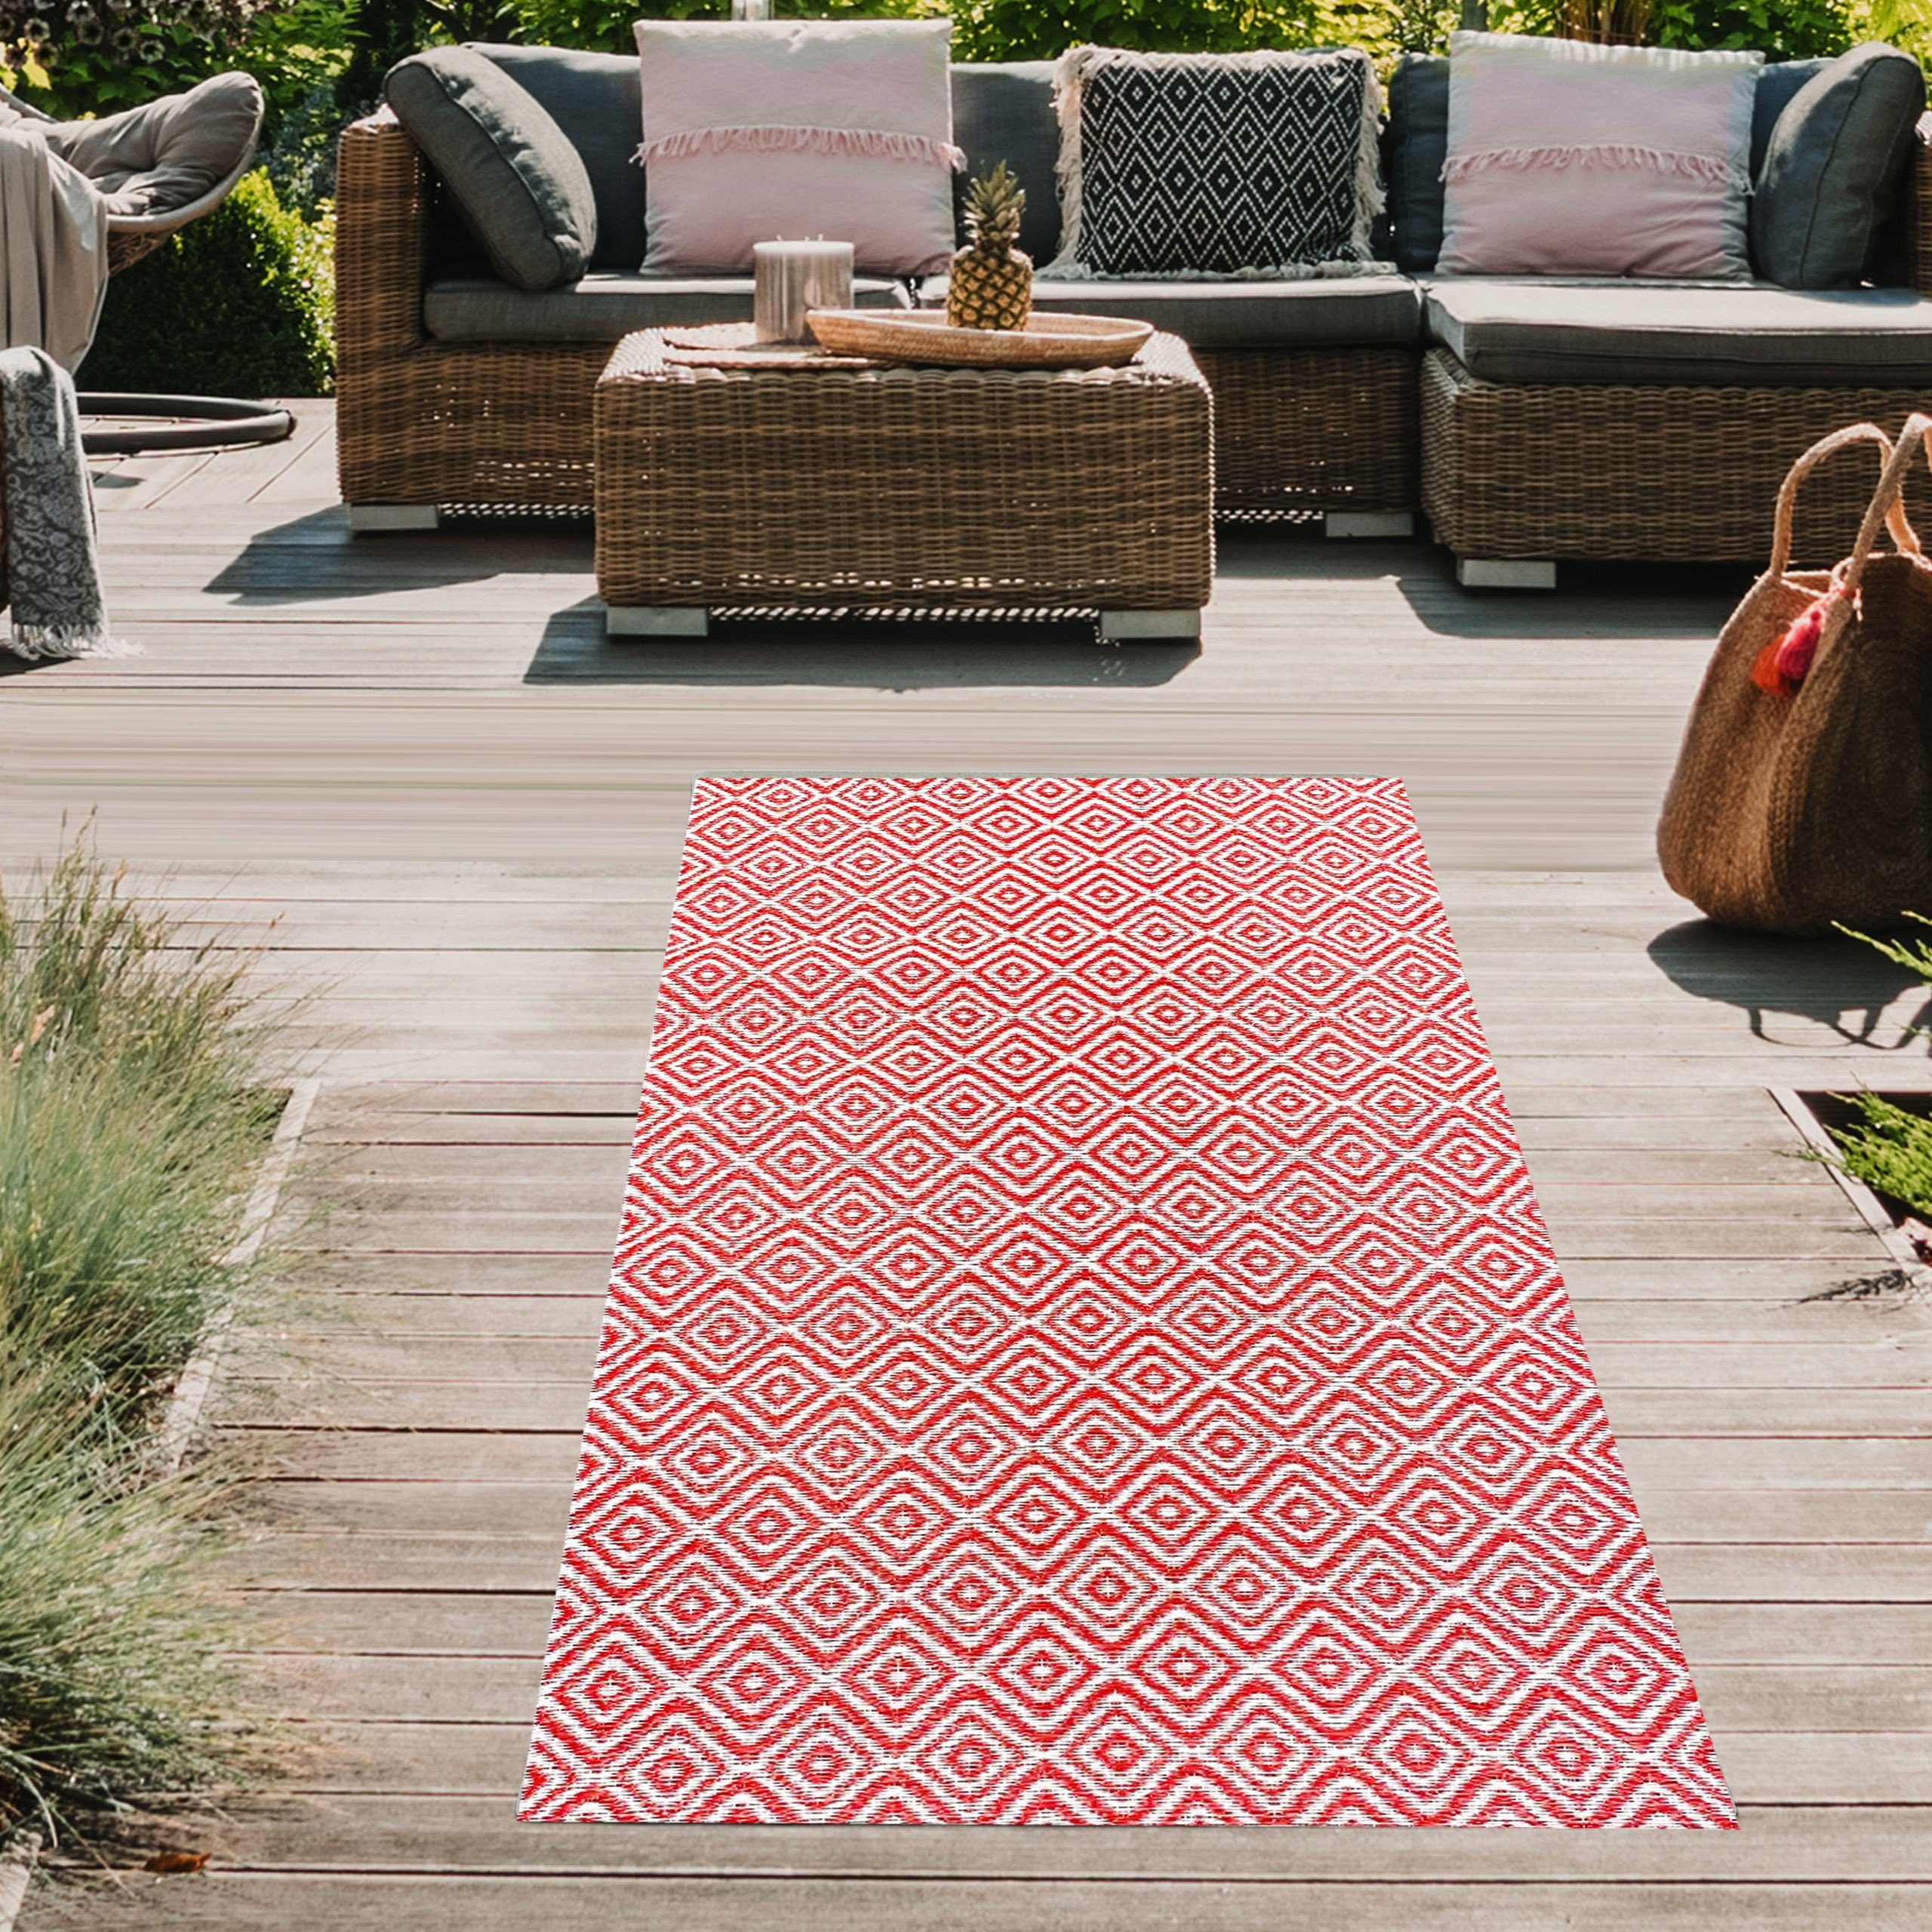 Outdoorteppich Praktischer in rechteckig rot/weiß, Rautenmuster mit Plastik Teppich-Traum, Outdoor-Teppich